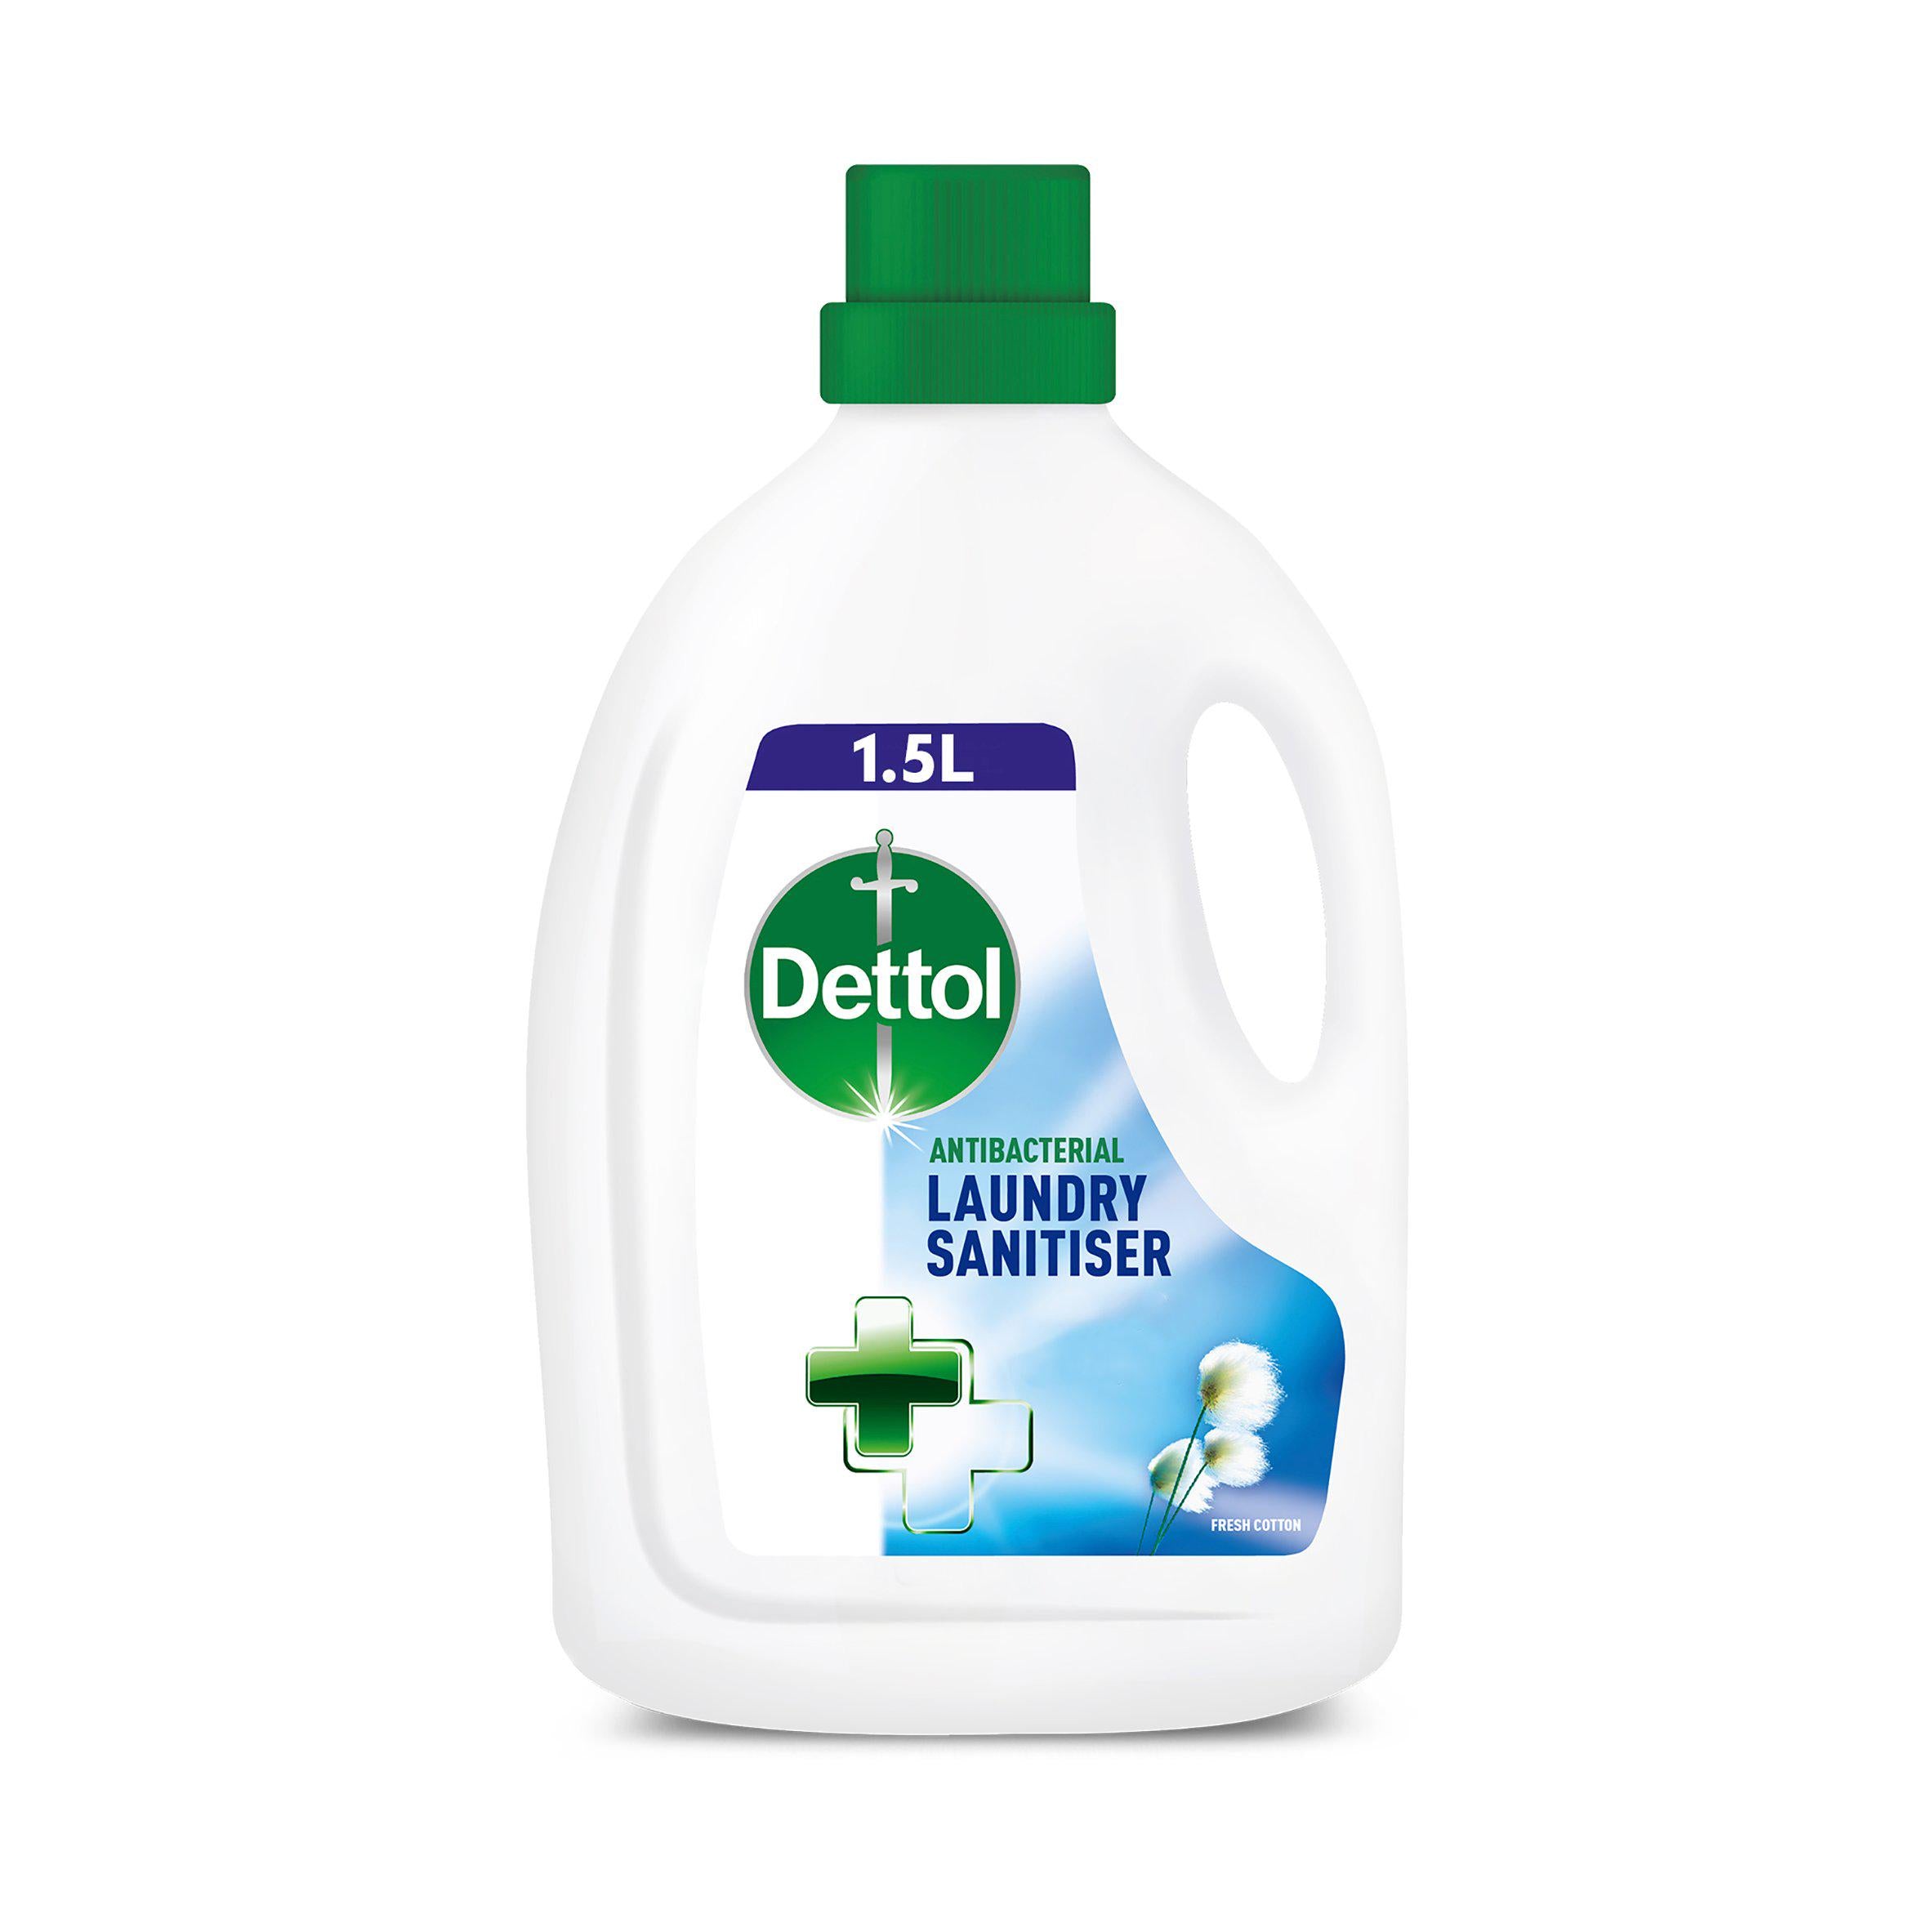 Dettol Antibacterial Laundry Cleanser Cotton Breeze 1.5L essentials Sainsburys   